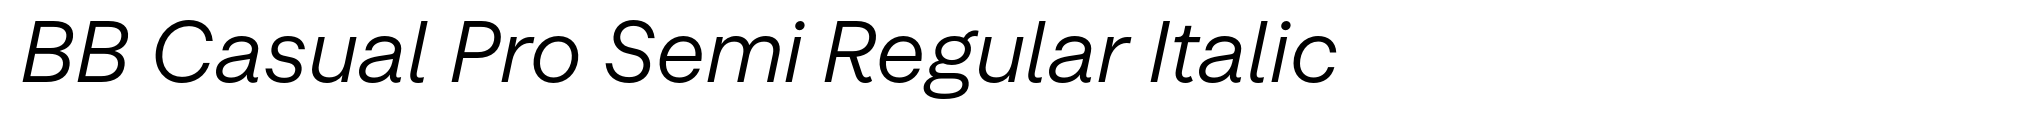 BB Casual Pro Semi Regular Italic image